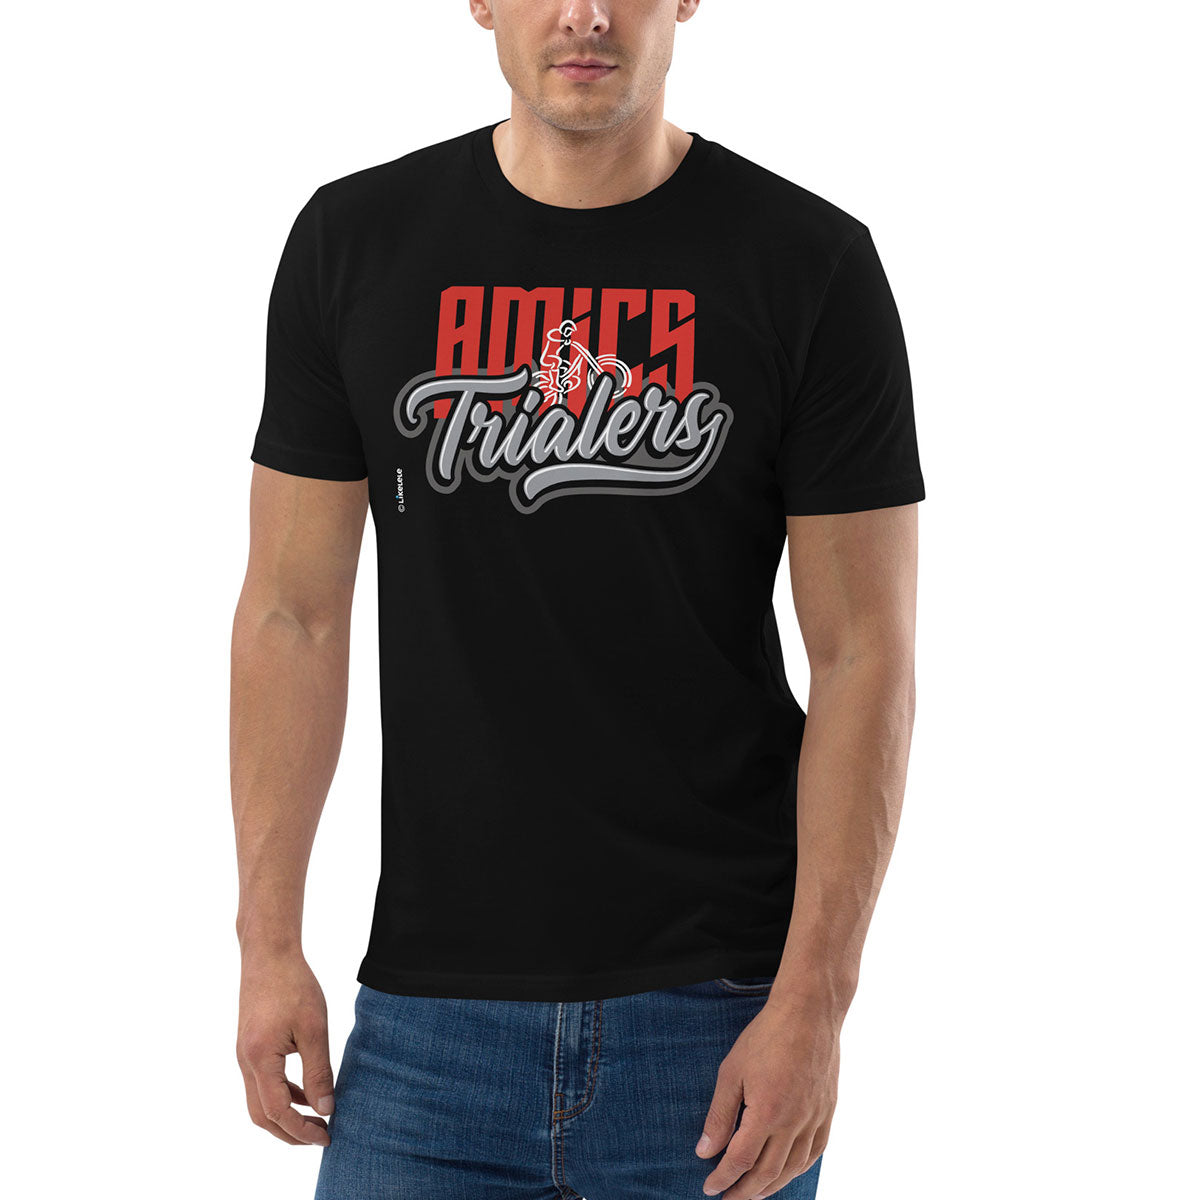 AMICS TRIALERS · Camiseta m/corta·Hombre/Unisex · Medium·Black-356c1f